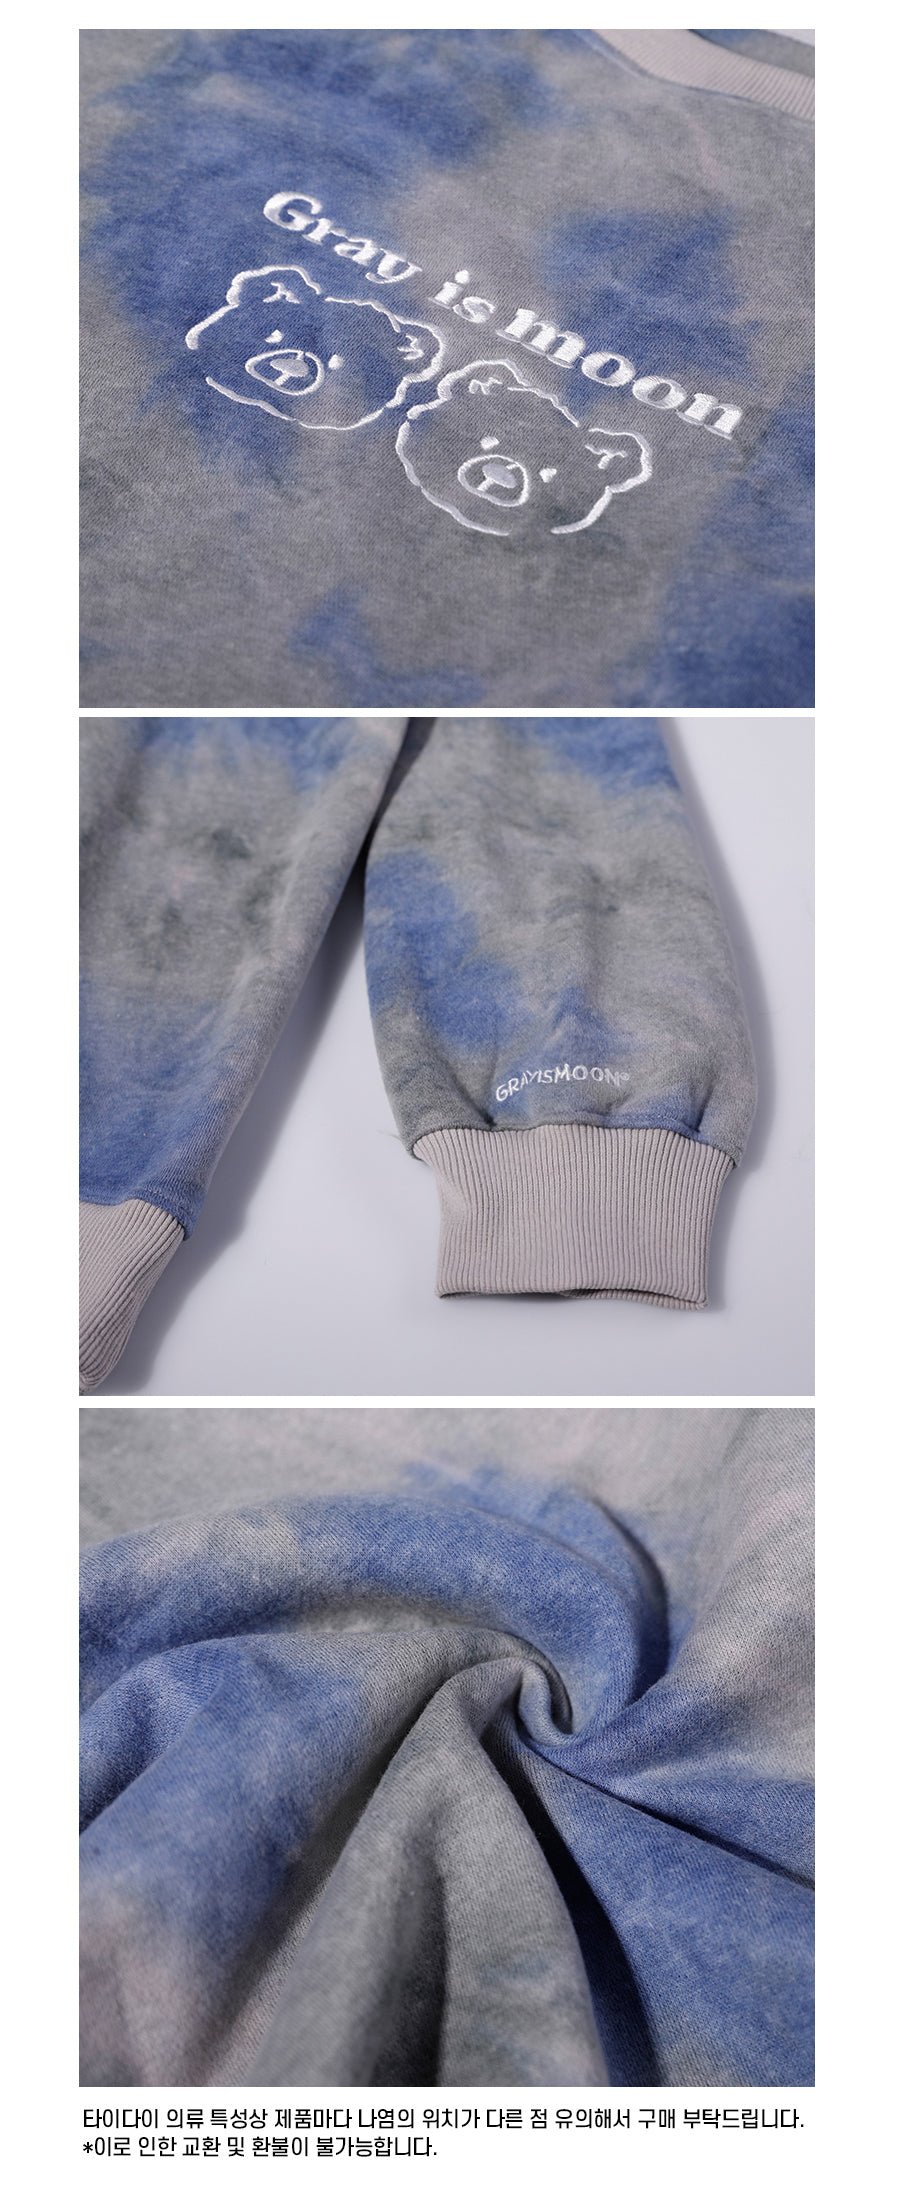 [tiedye] doublebear Sweatshirt - blue